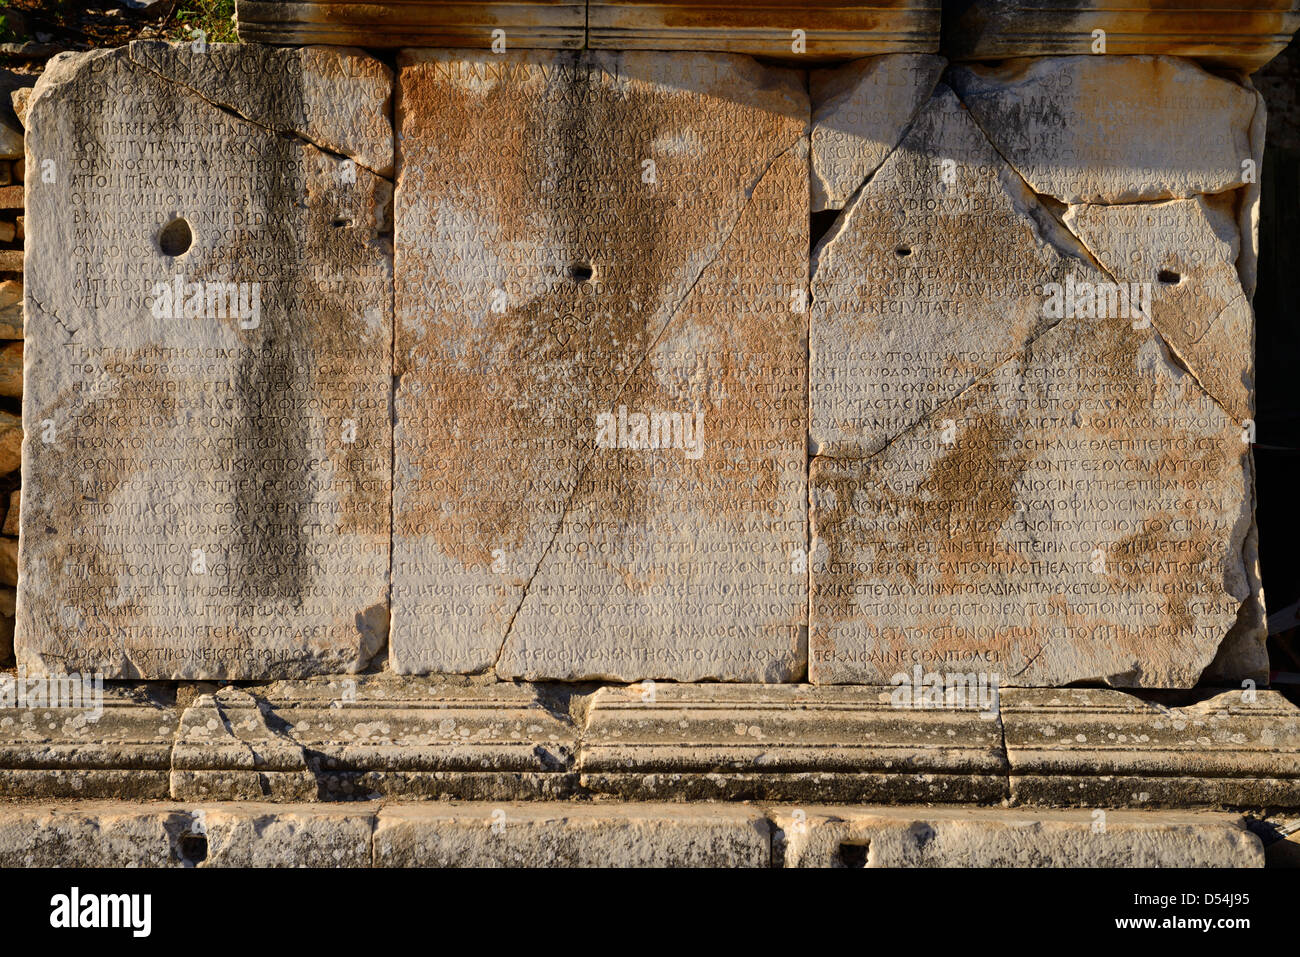 Inscription grecque sur les blocs de pierre sur la rue des curetes ephèse turquie Banque D'Images